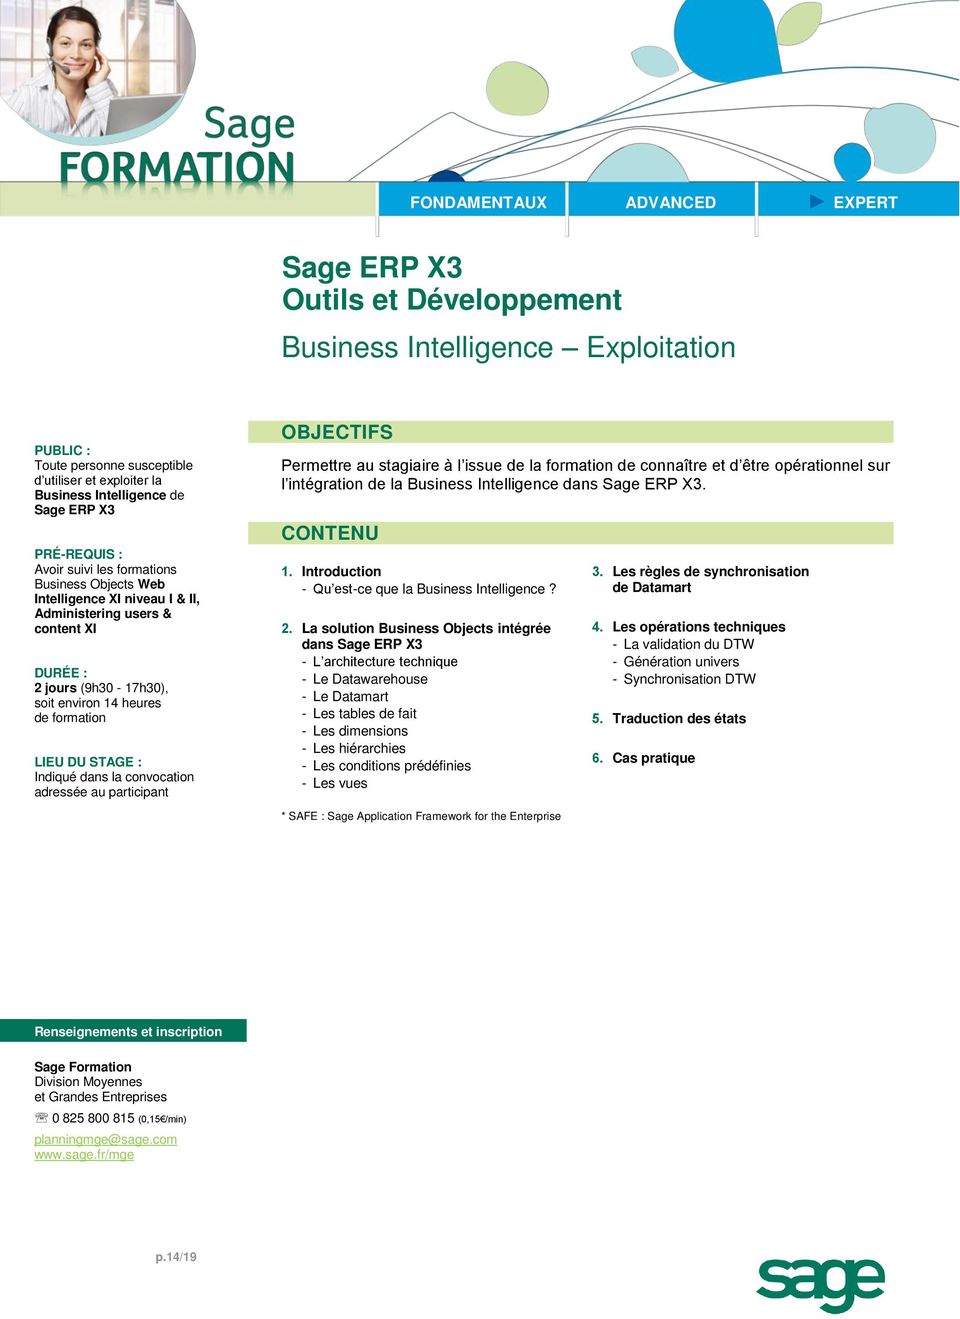 Intelligence dans. 1. Introduction - Qu est-ce que la Business Intelligence? 2.